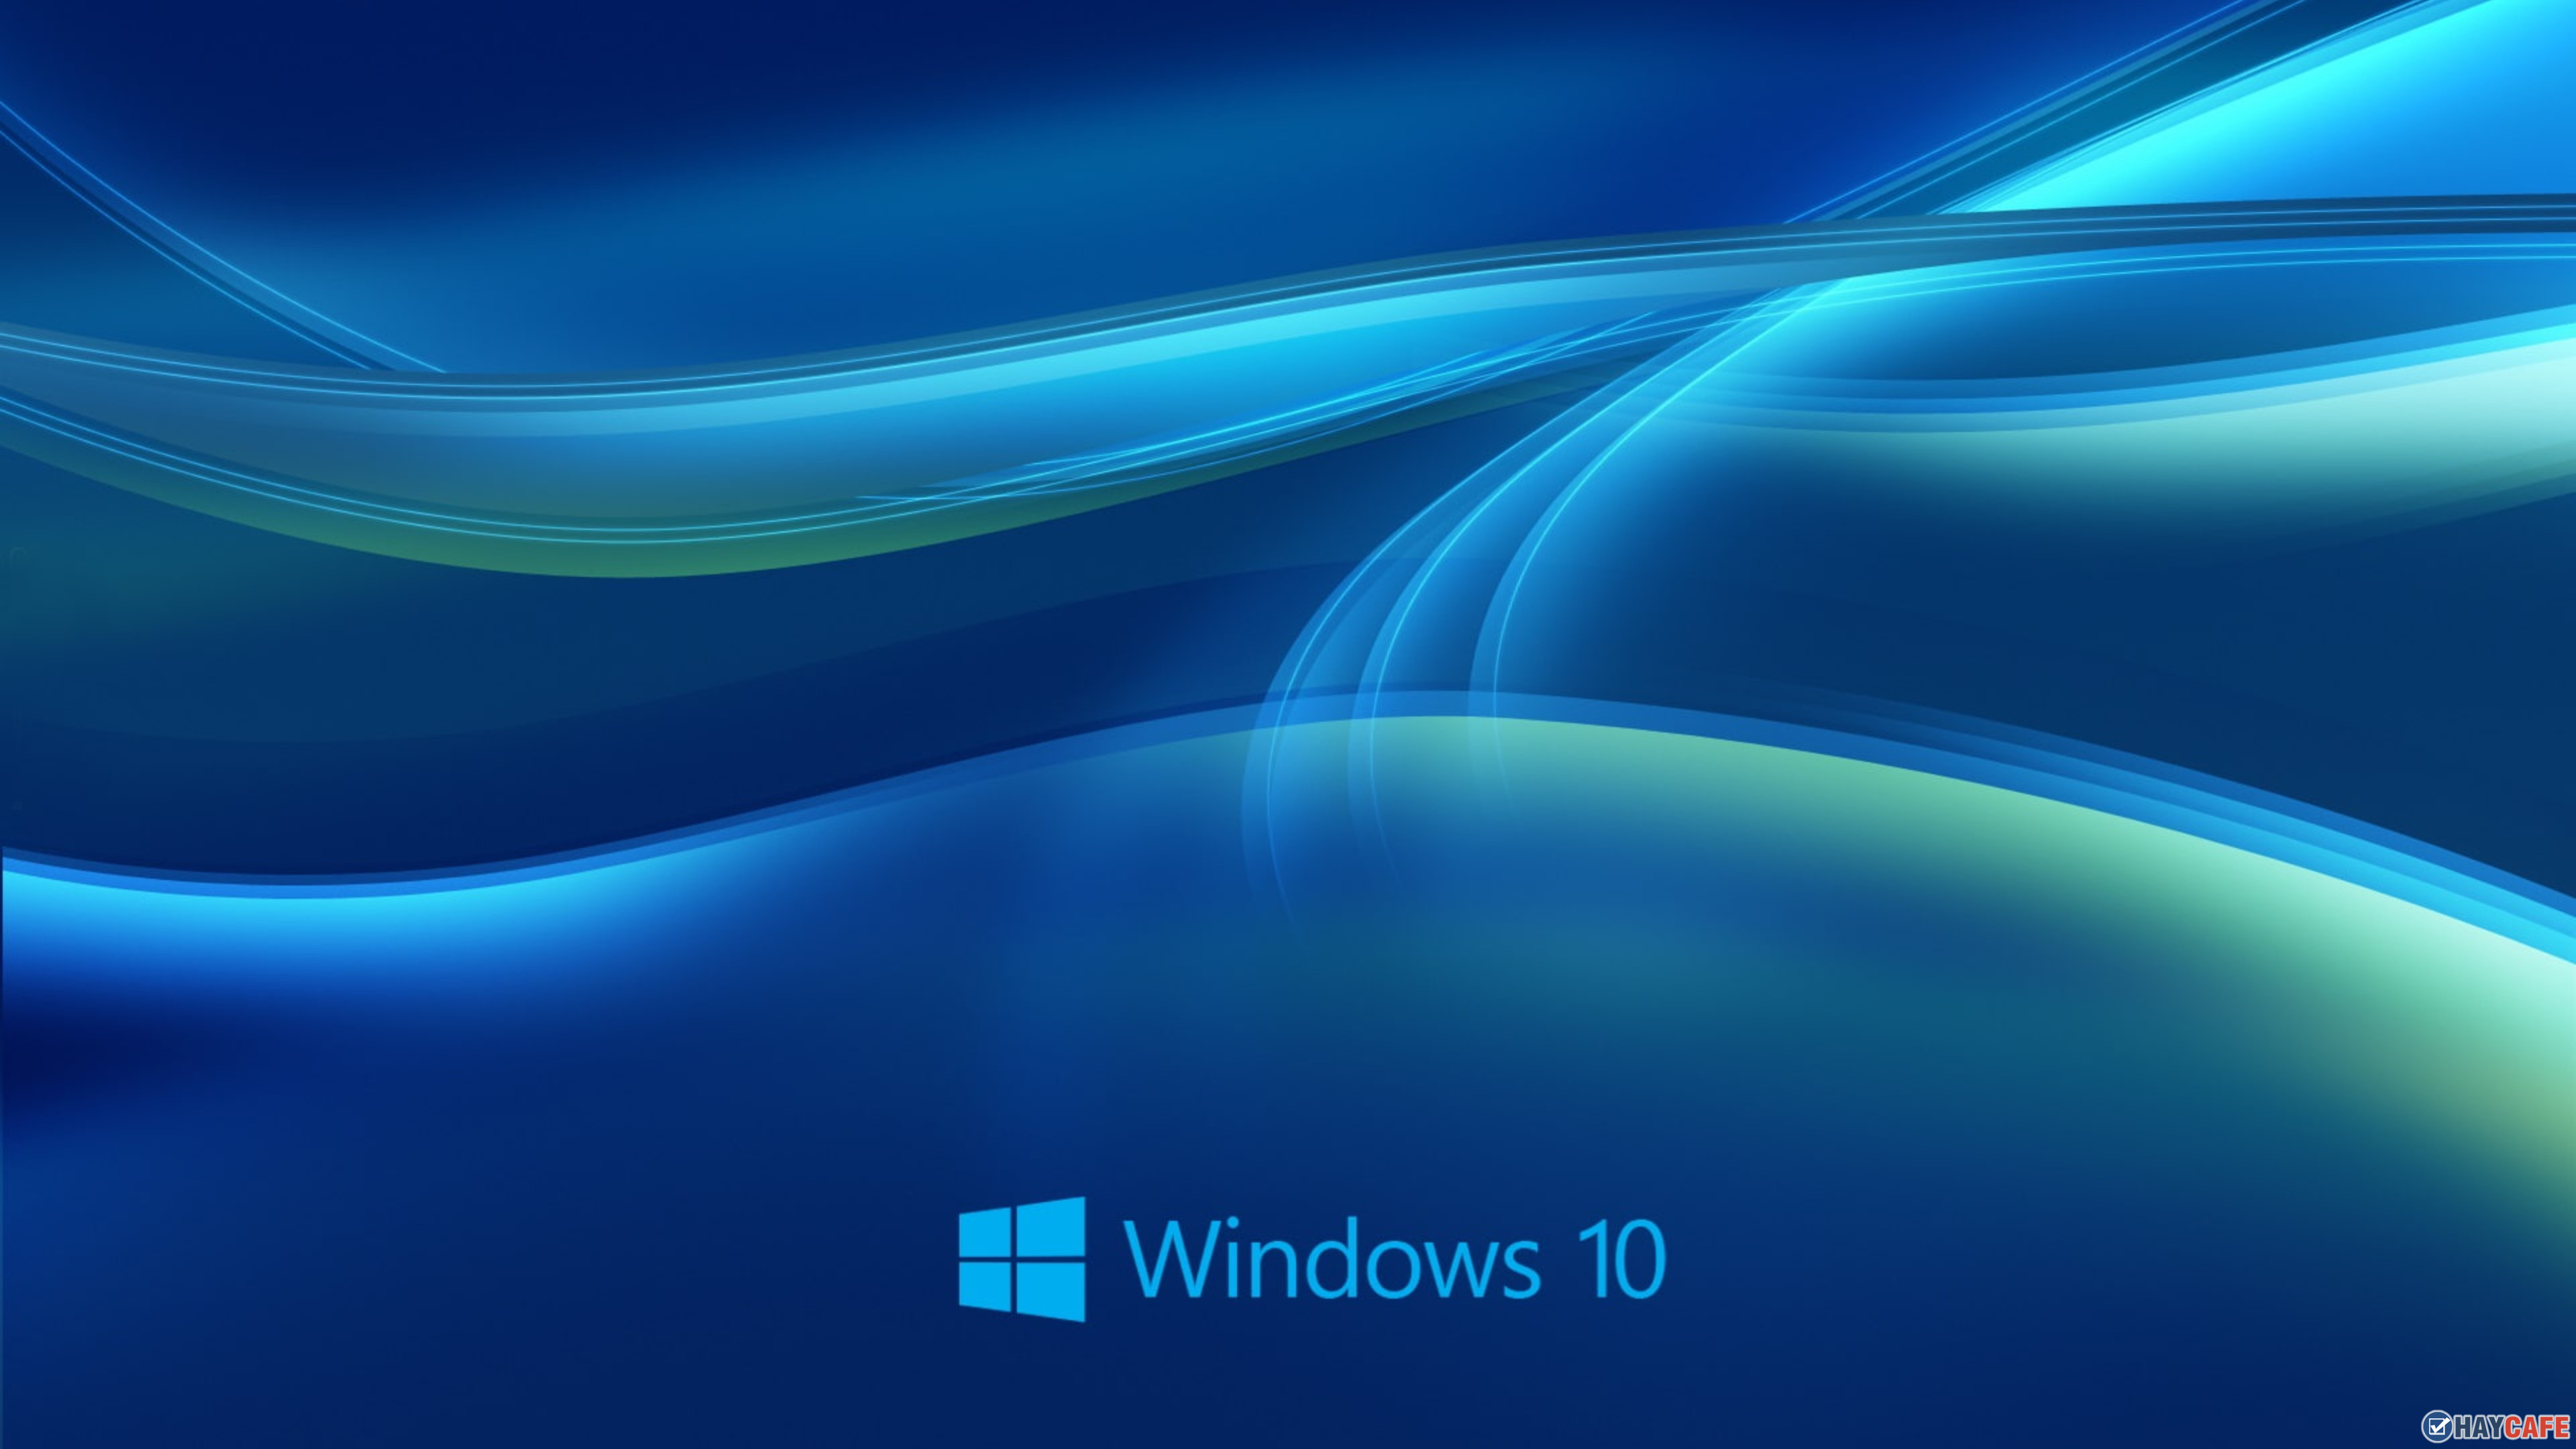 Windows 10 UHD 4K Wallpapers  Pixelz